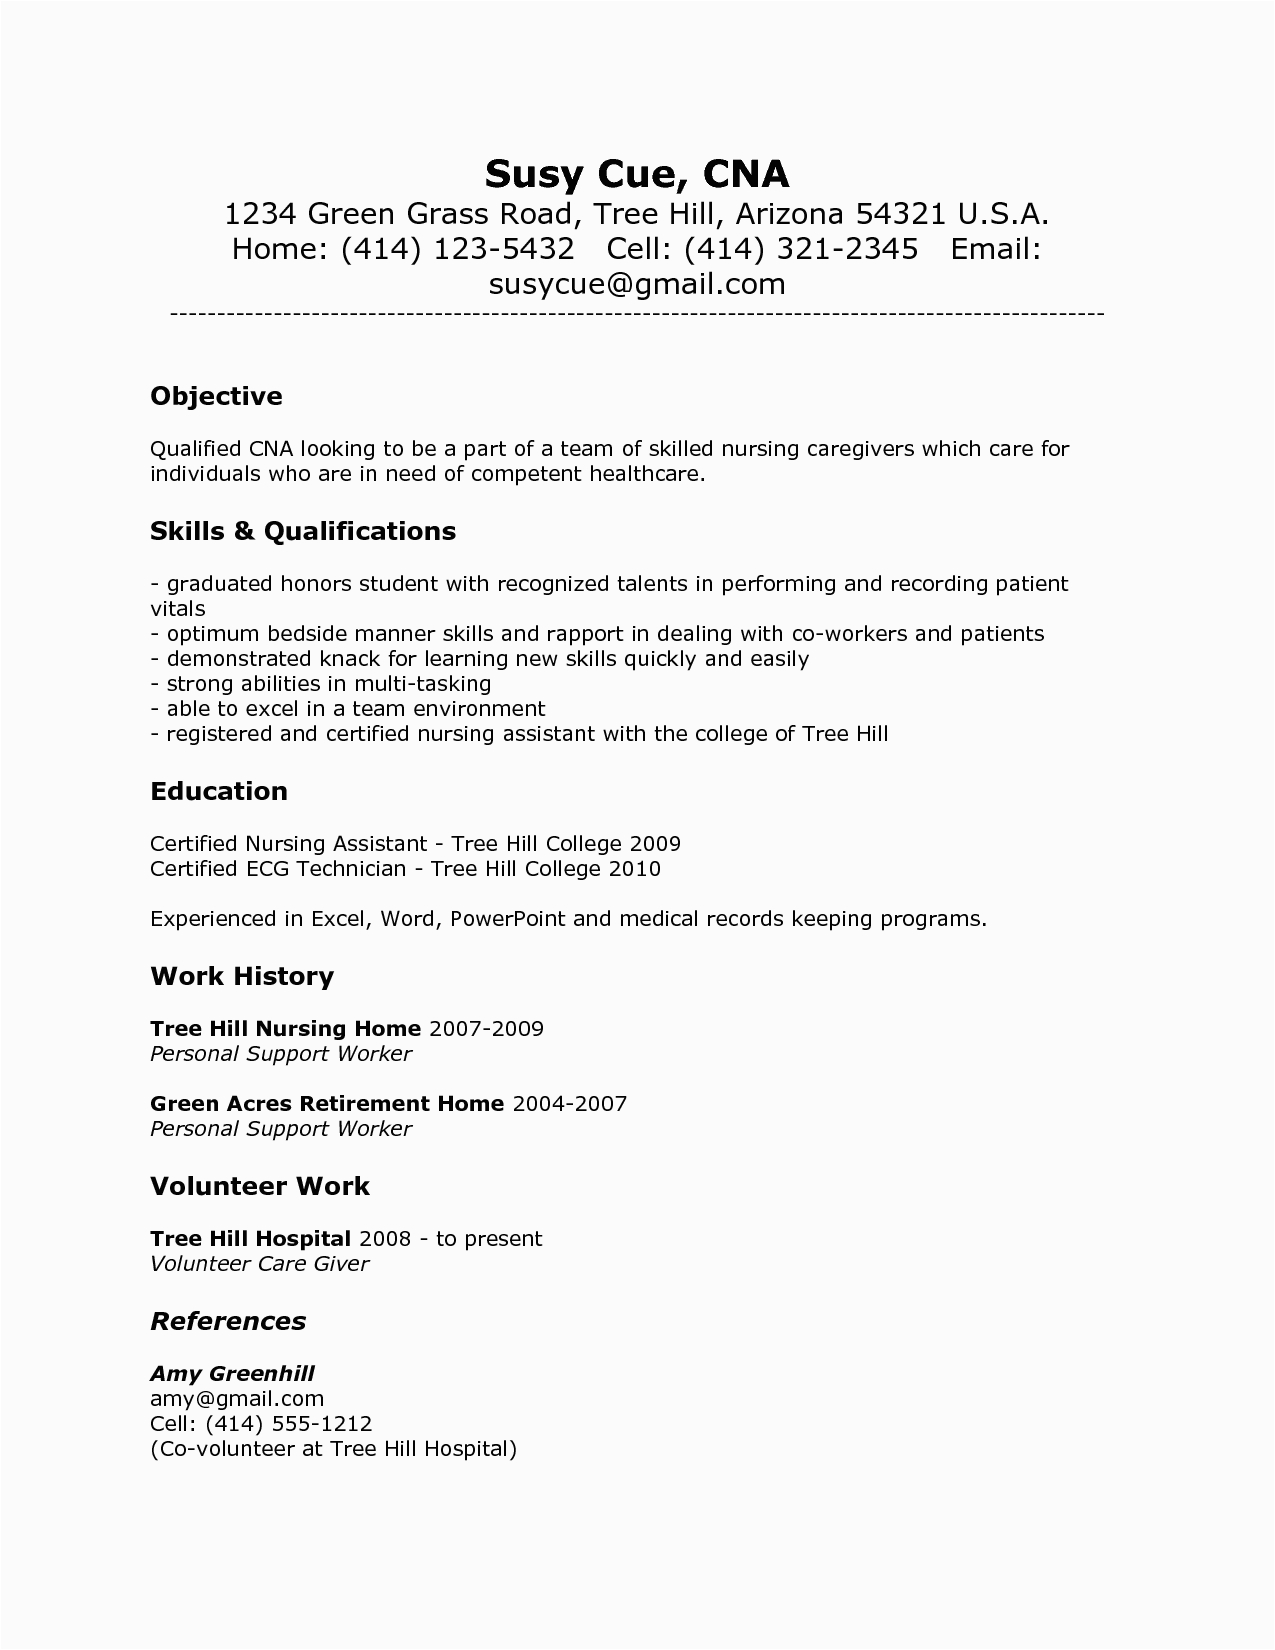 cna resume sample